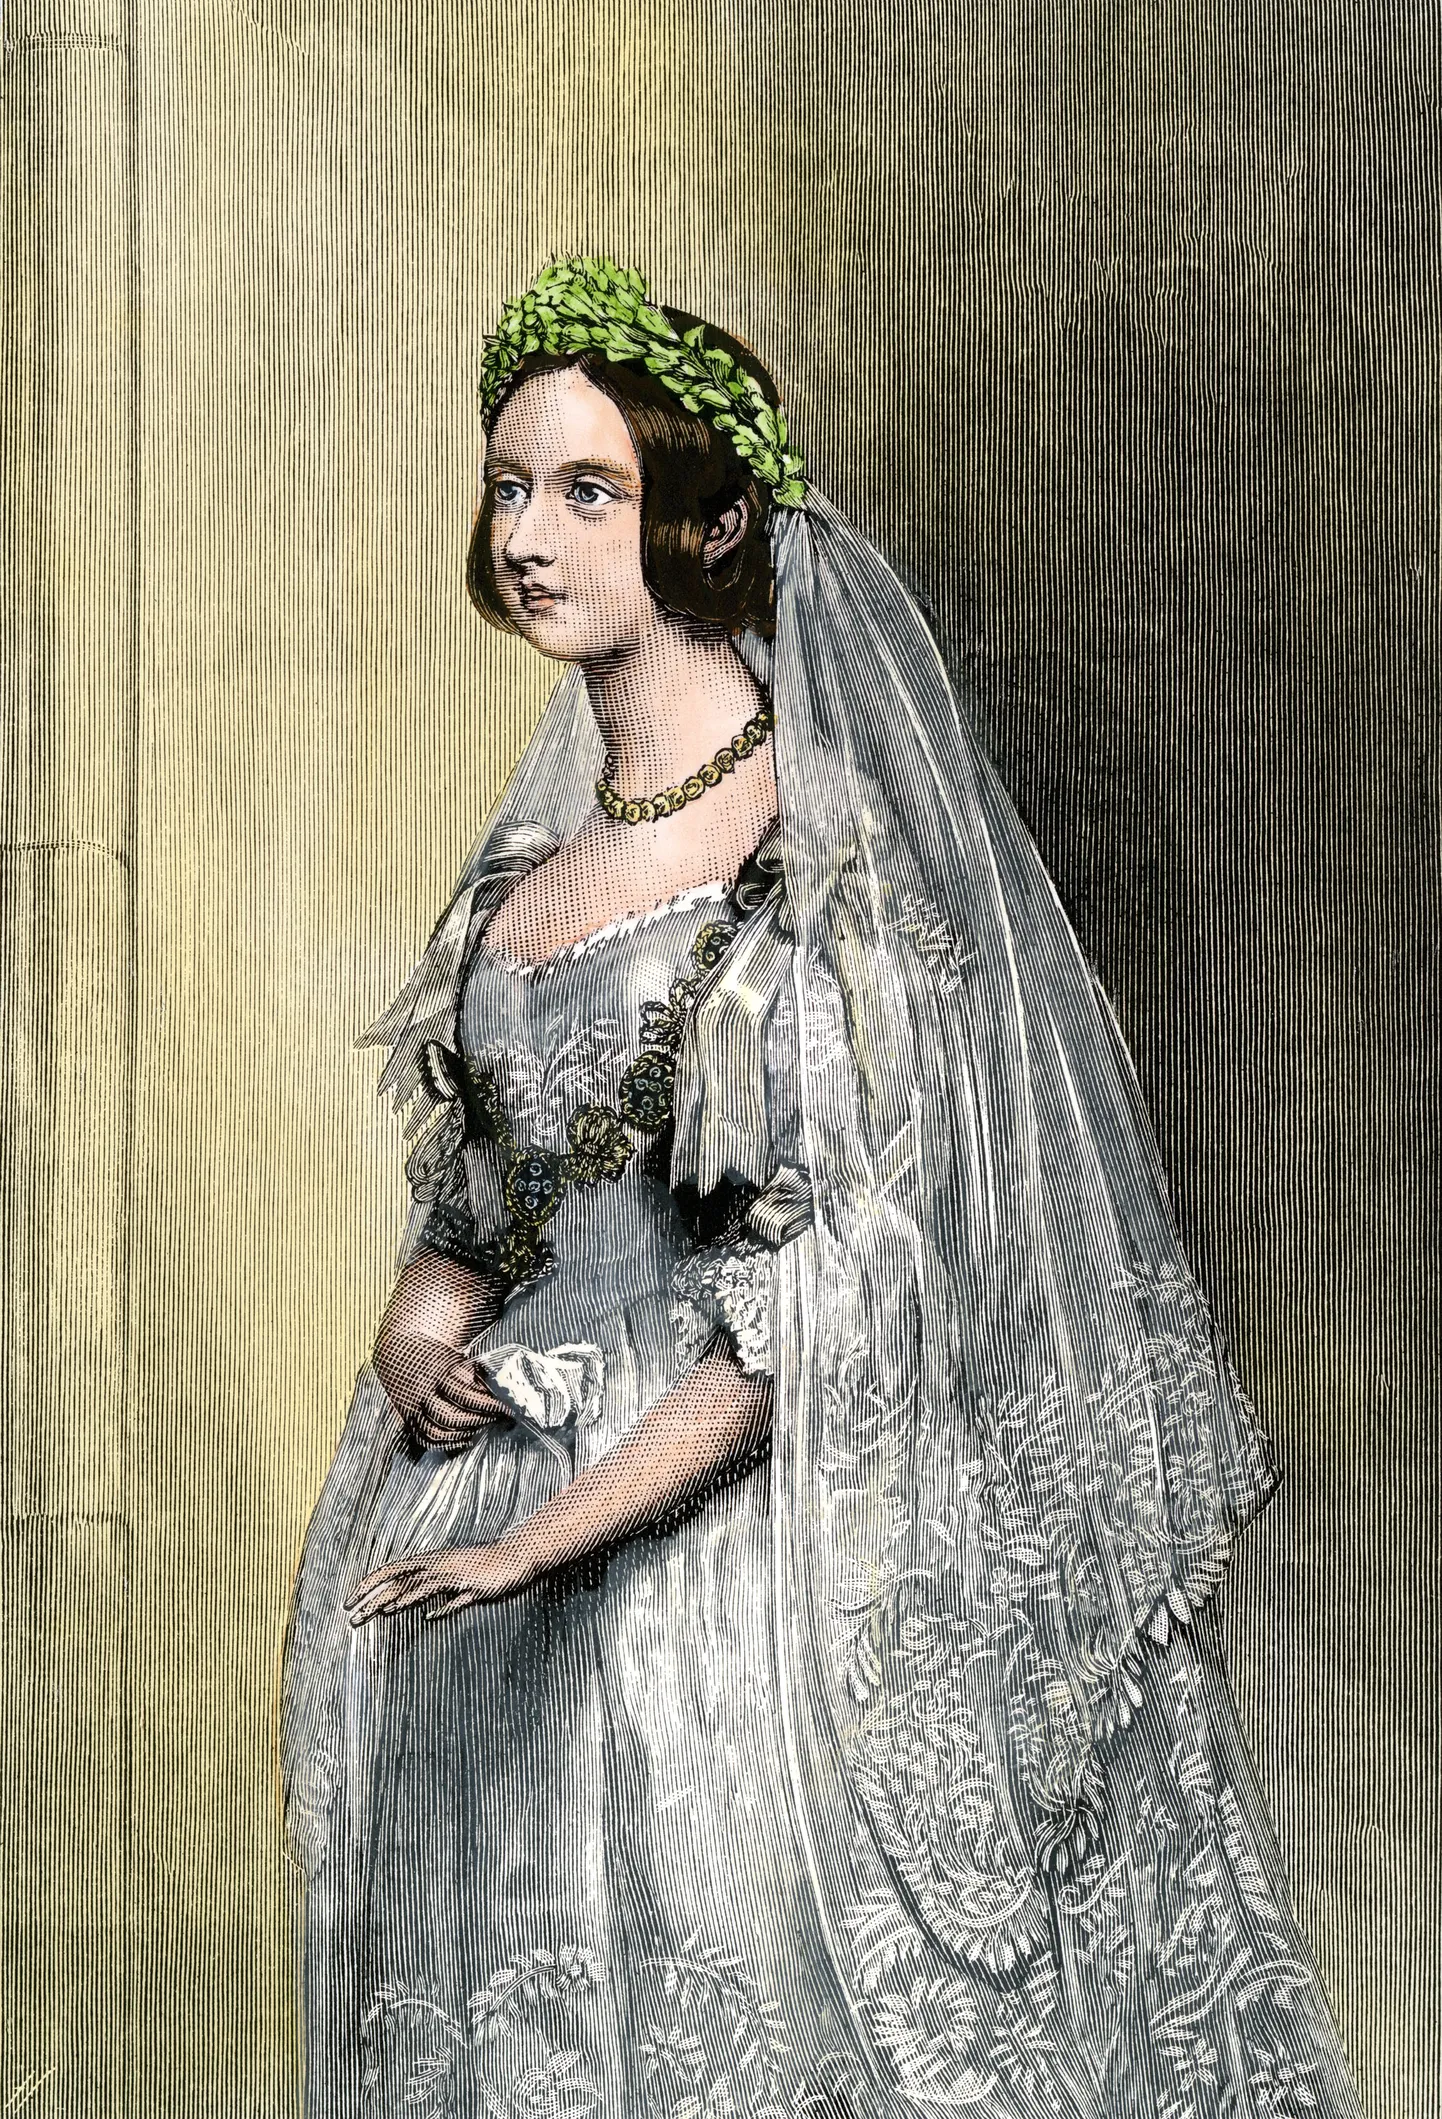 Kuninganna Victoria oma pulmapäeval